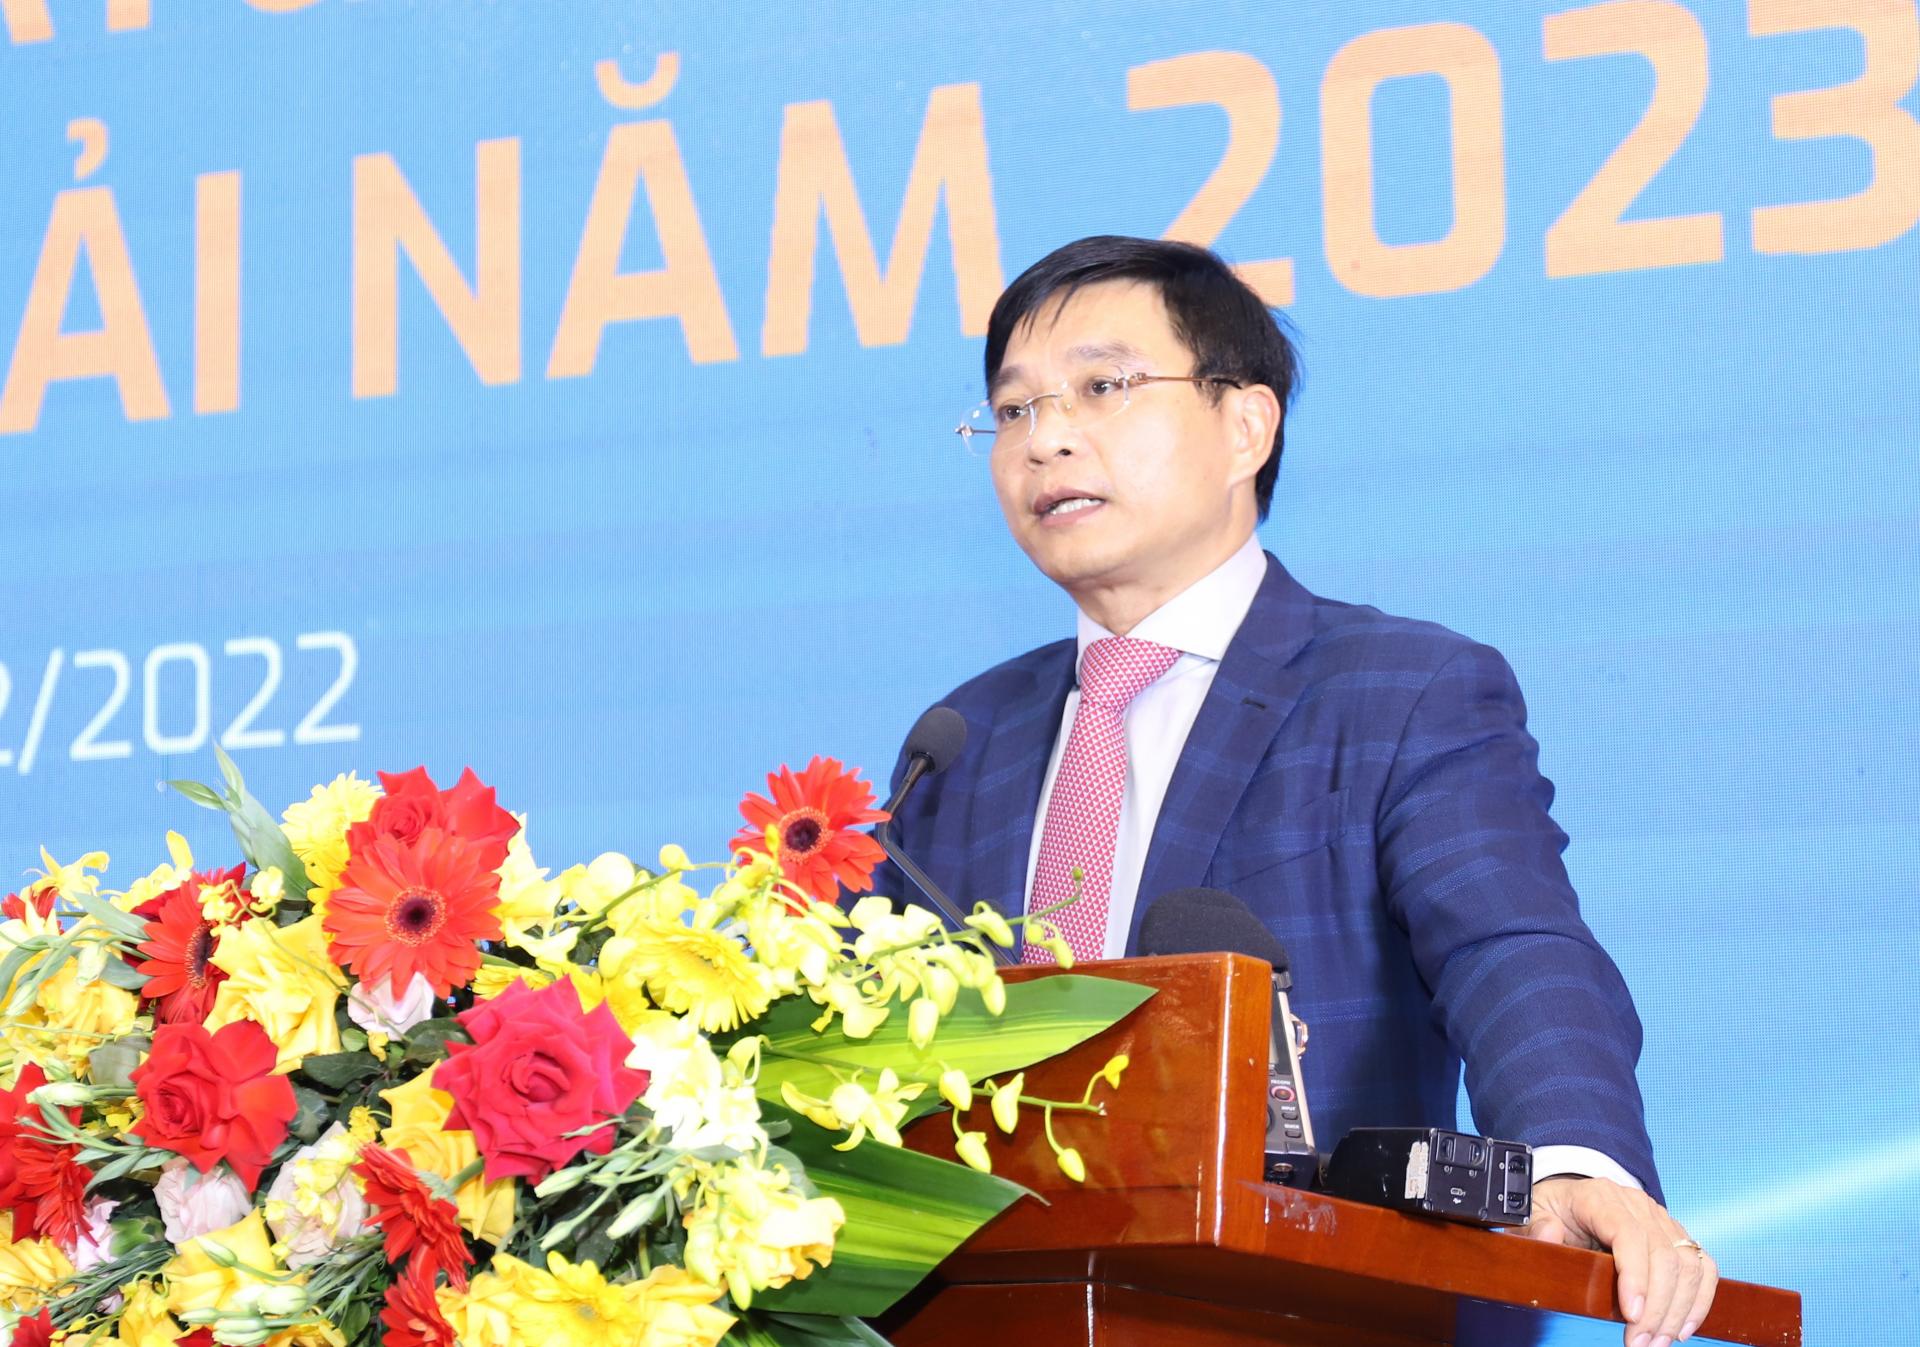 Bộ trưởng Bộ Giao thông Vận tải Phó Chủ tịch Thường trực Ủy ban An toàn giao thông Quốc gia Nguyễn Văn Thắng phát biểu tại buổi lễ. Ảnh: internet